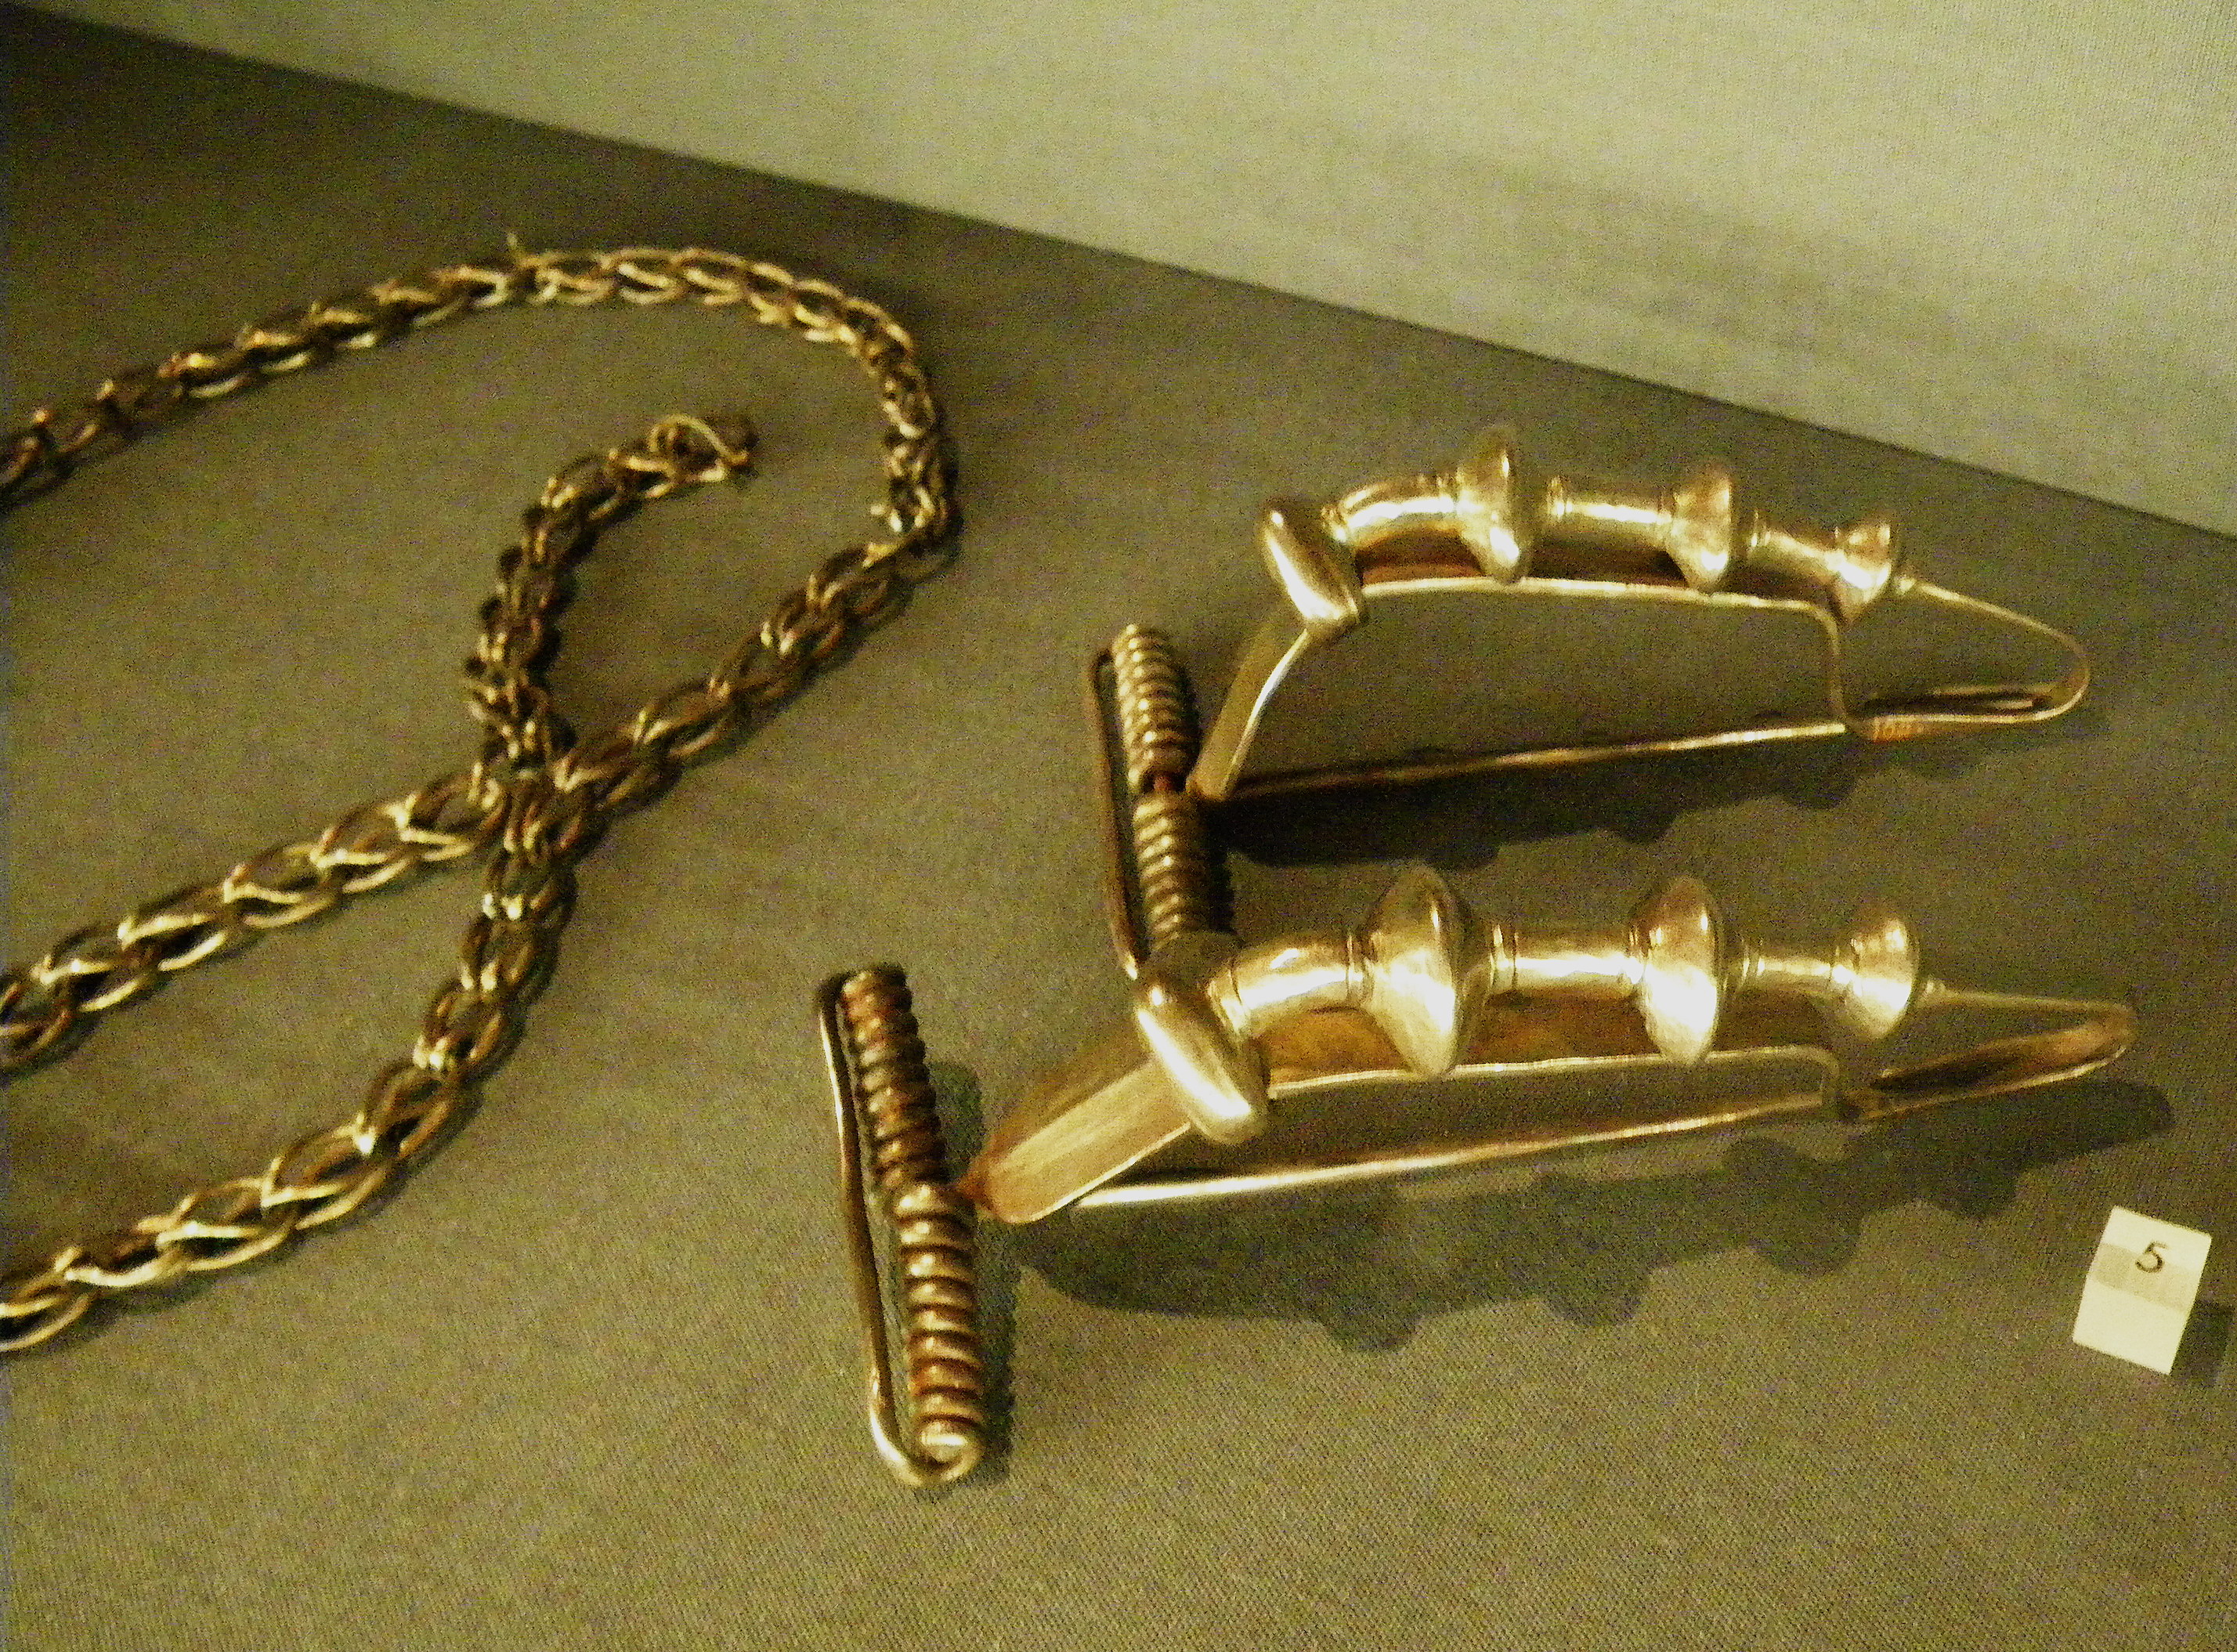 File:Dacian hook-and-eye bracelet.jpg - Wikimedia Commons